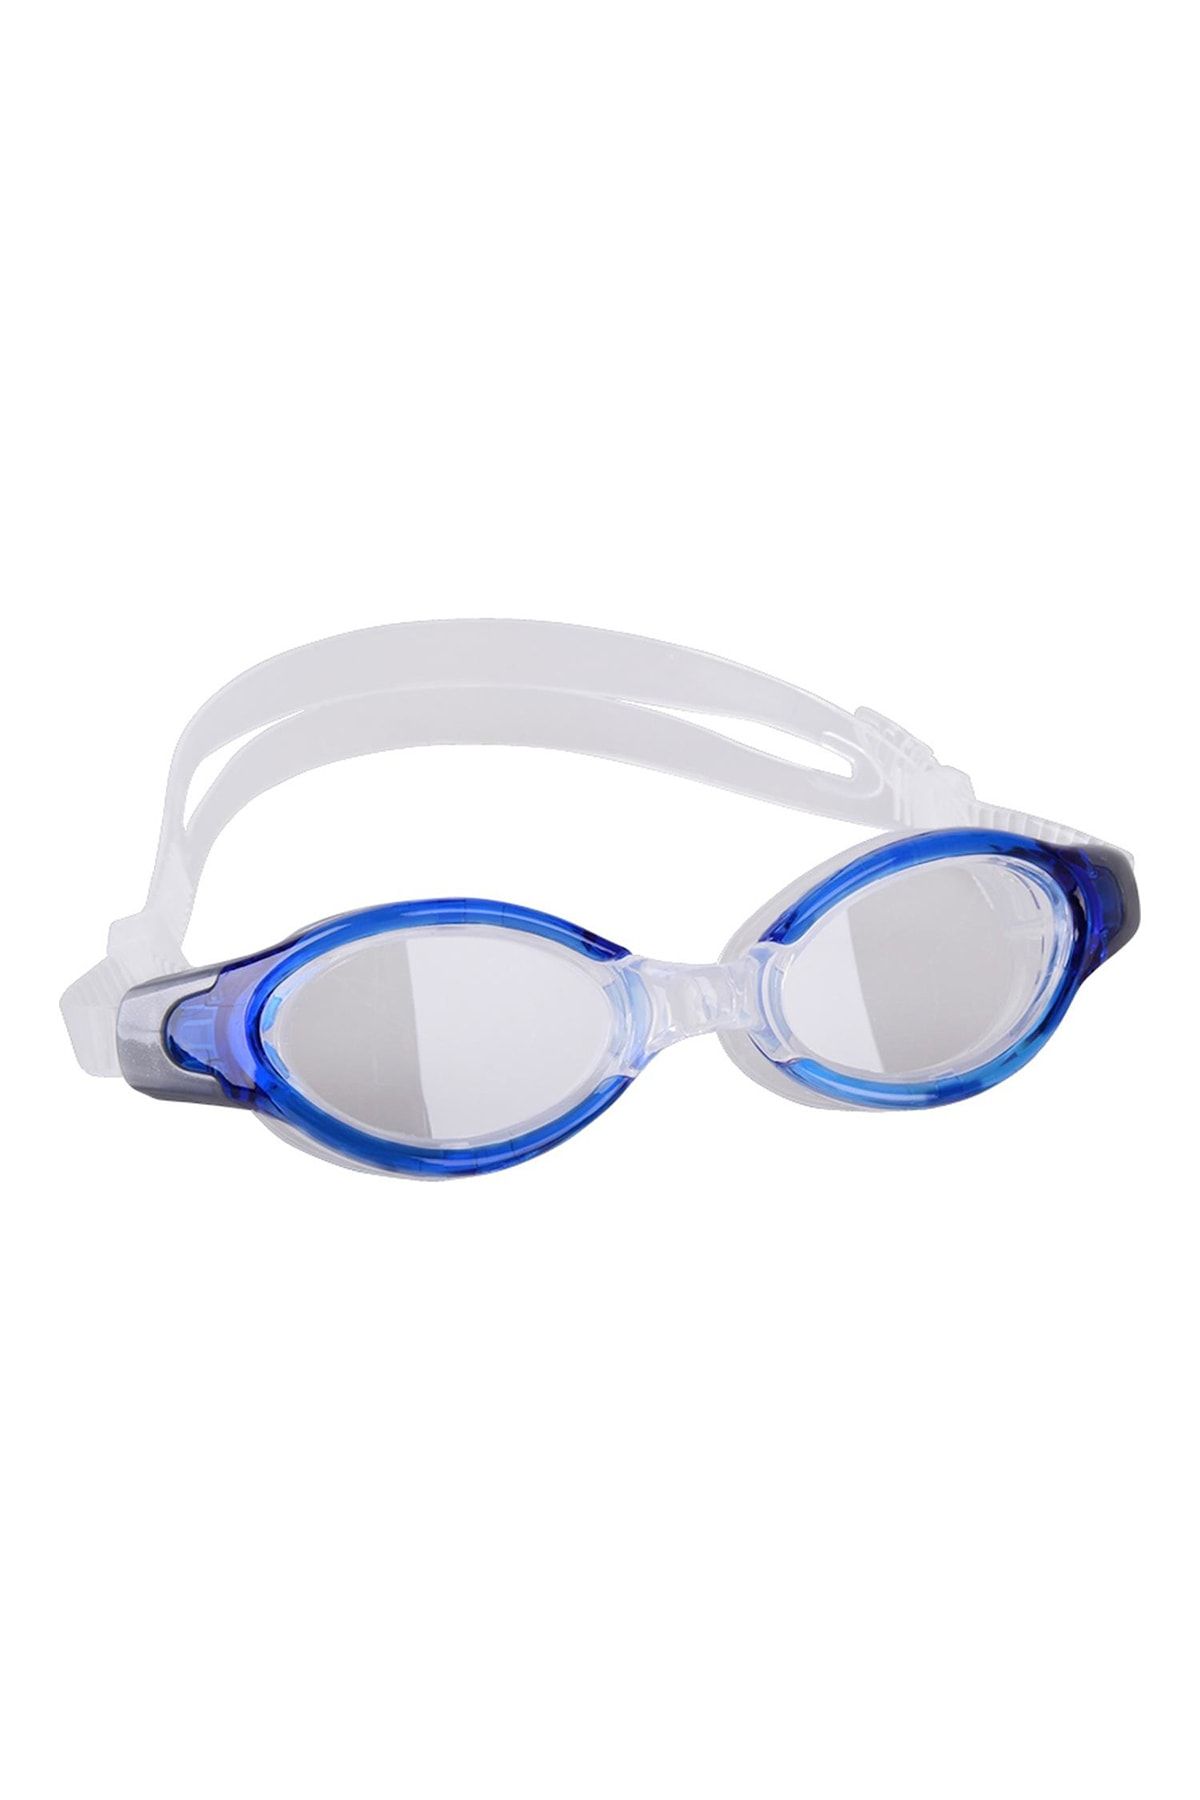 Delta Ravel (Lüks Kutulu) GS5A Havuz Deniz Yüzücü Gözlüğü Yetişkin Yüzücü Gözlük MAVİ